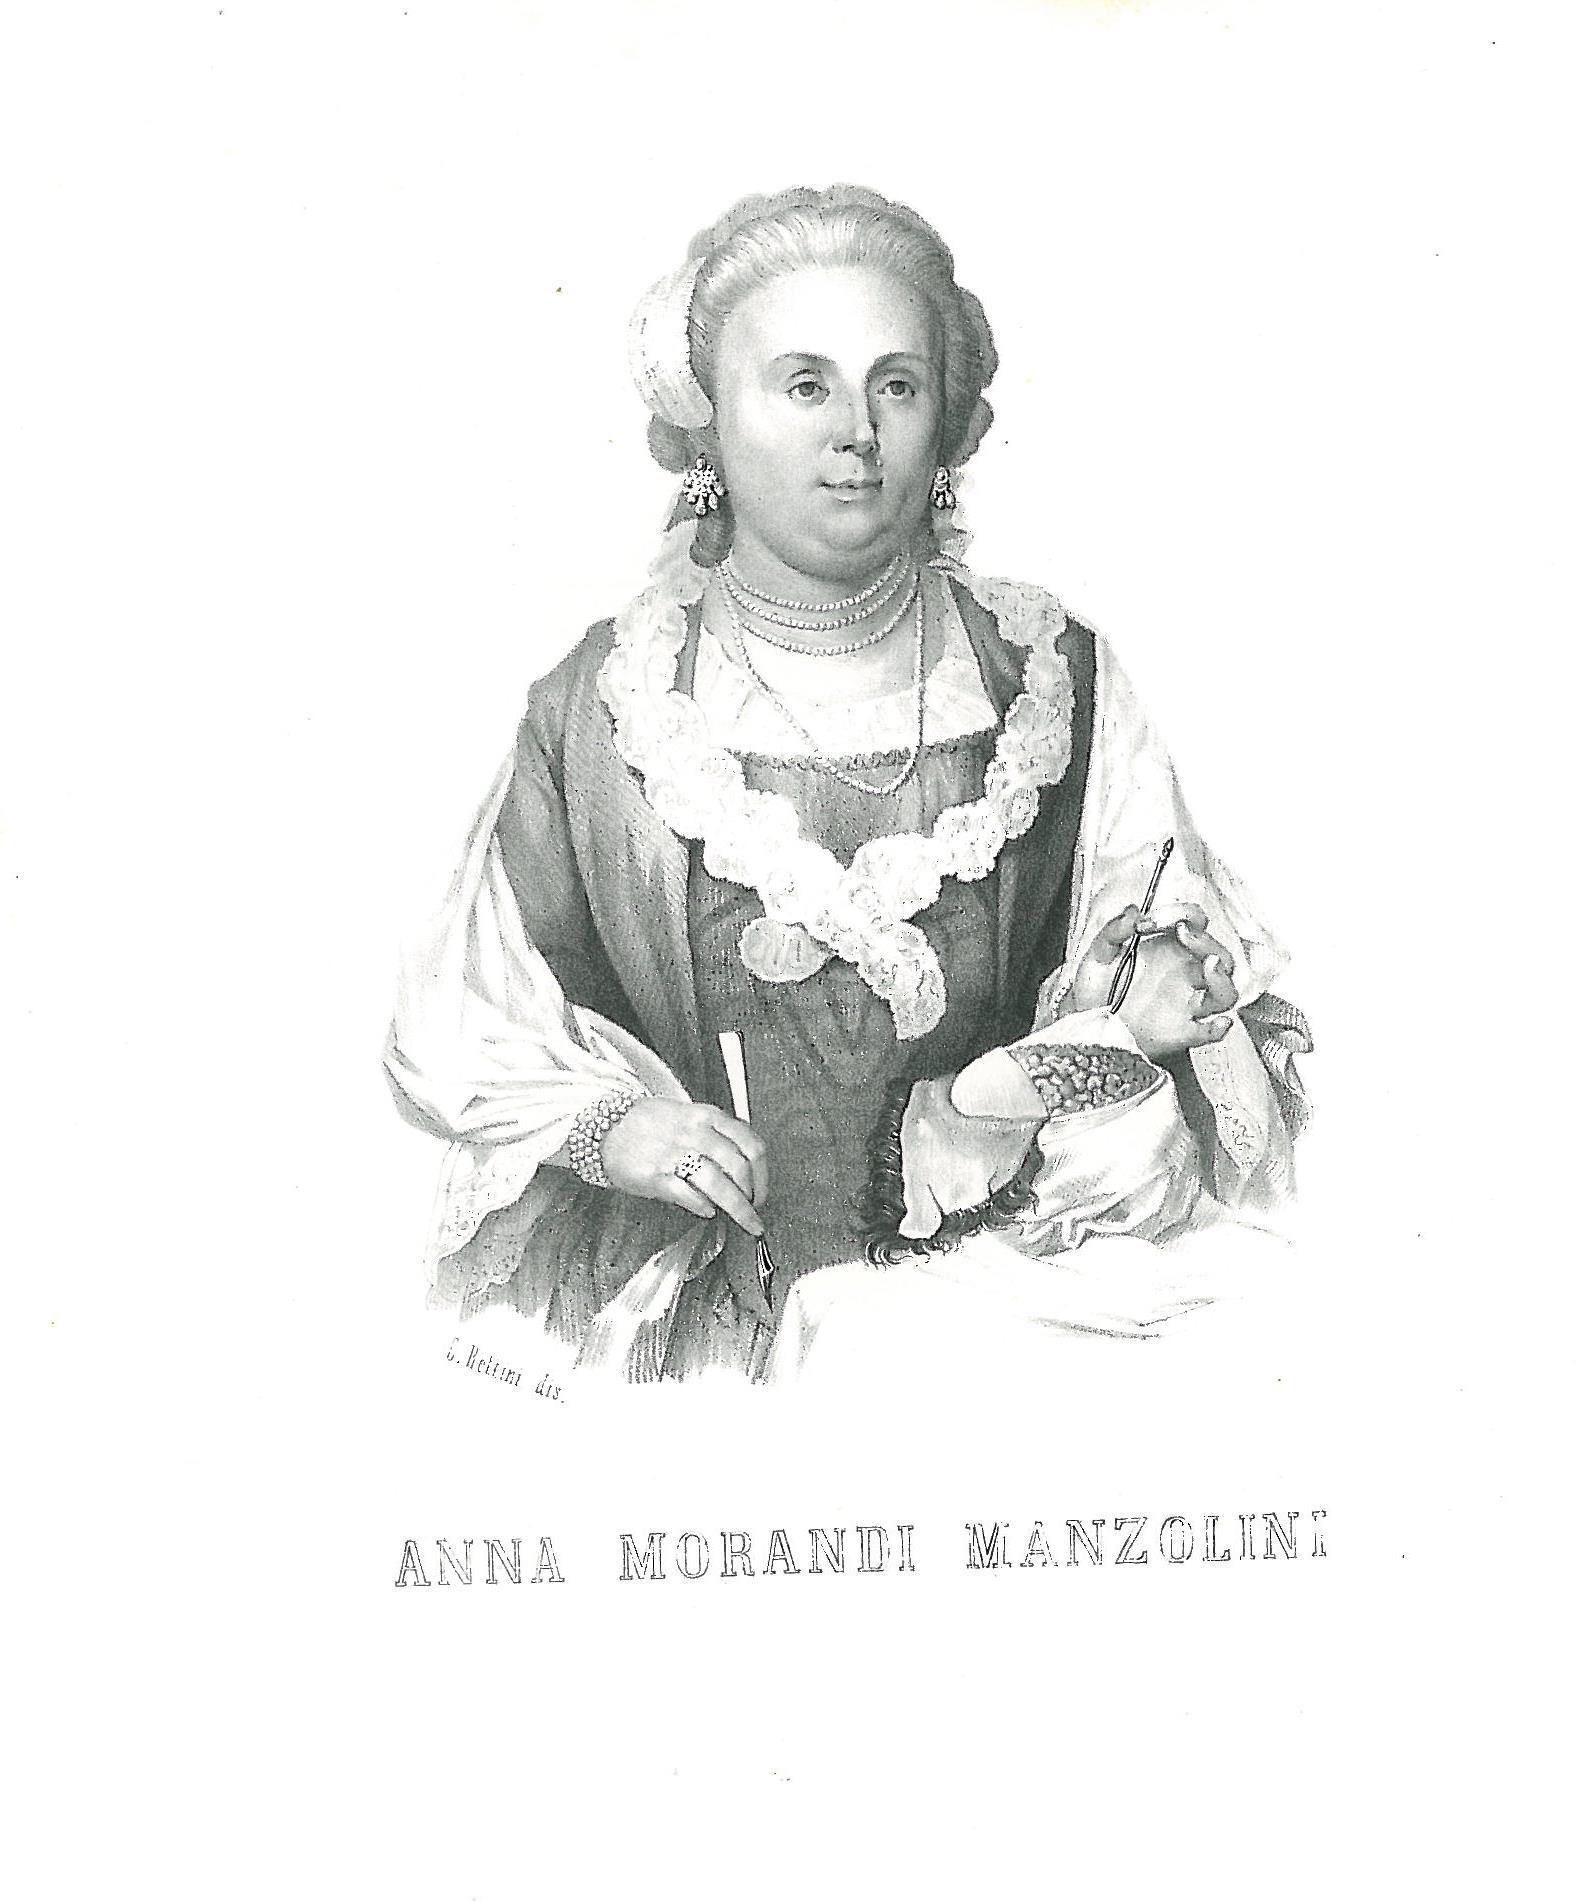 Anna Morandi Manzolini